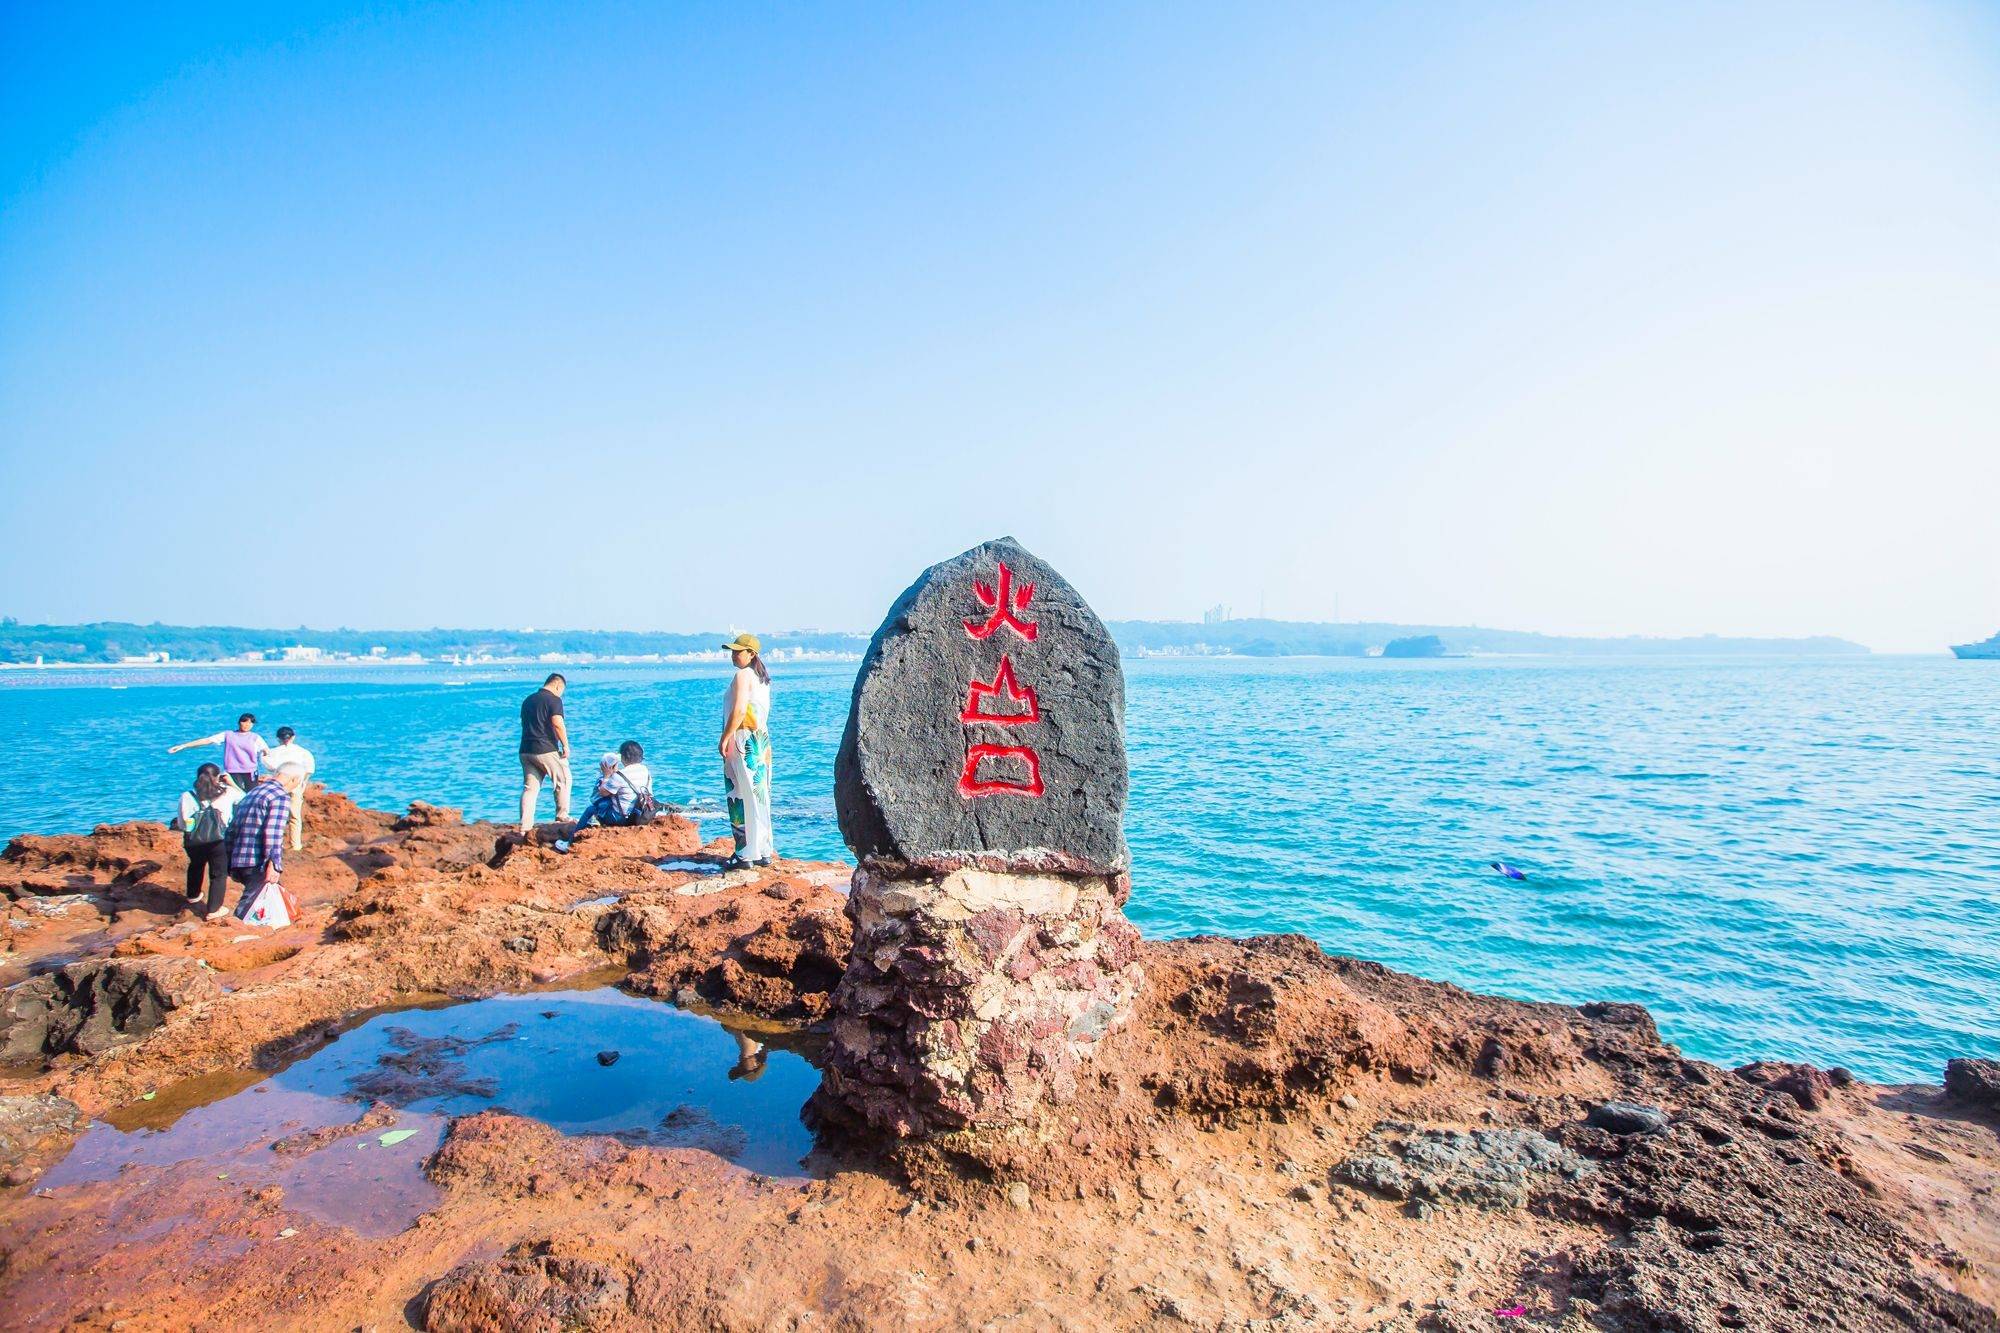 广西涠洲岛旅游,别错过这座鳄鱼山,感受北纬21度的浪漫与自由